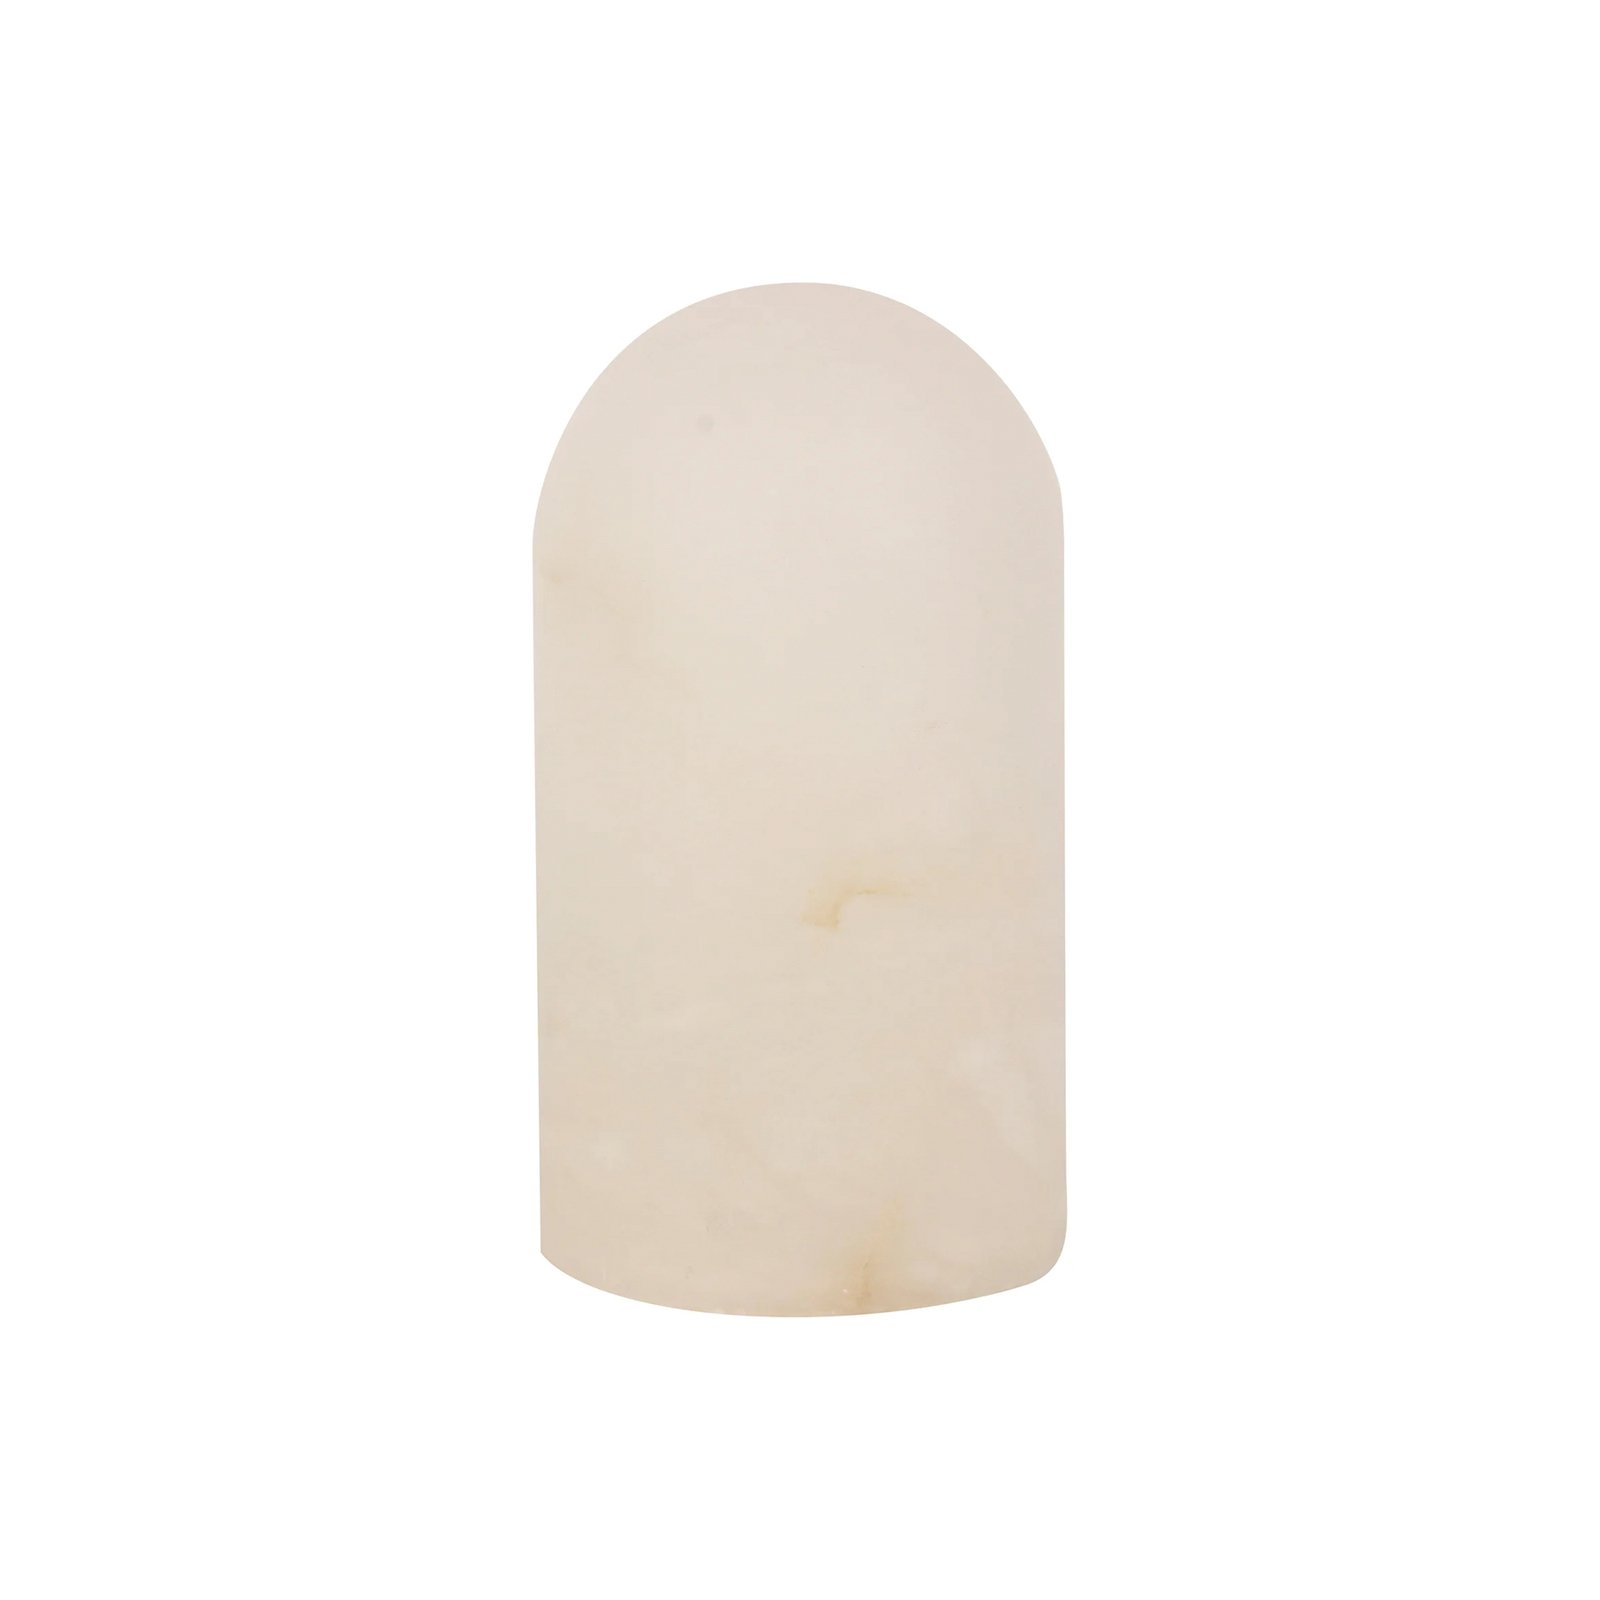 Lampa stołowa Beacon Panton, biały kamień alabastrowy, wysokość 17,5 cm